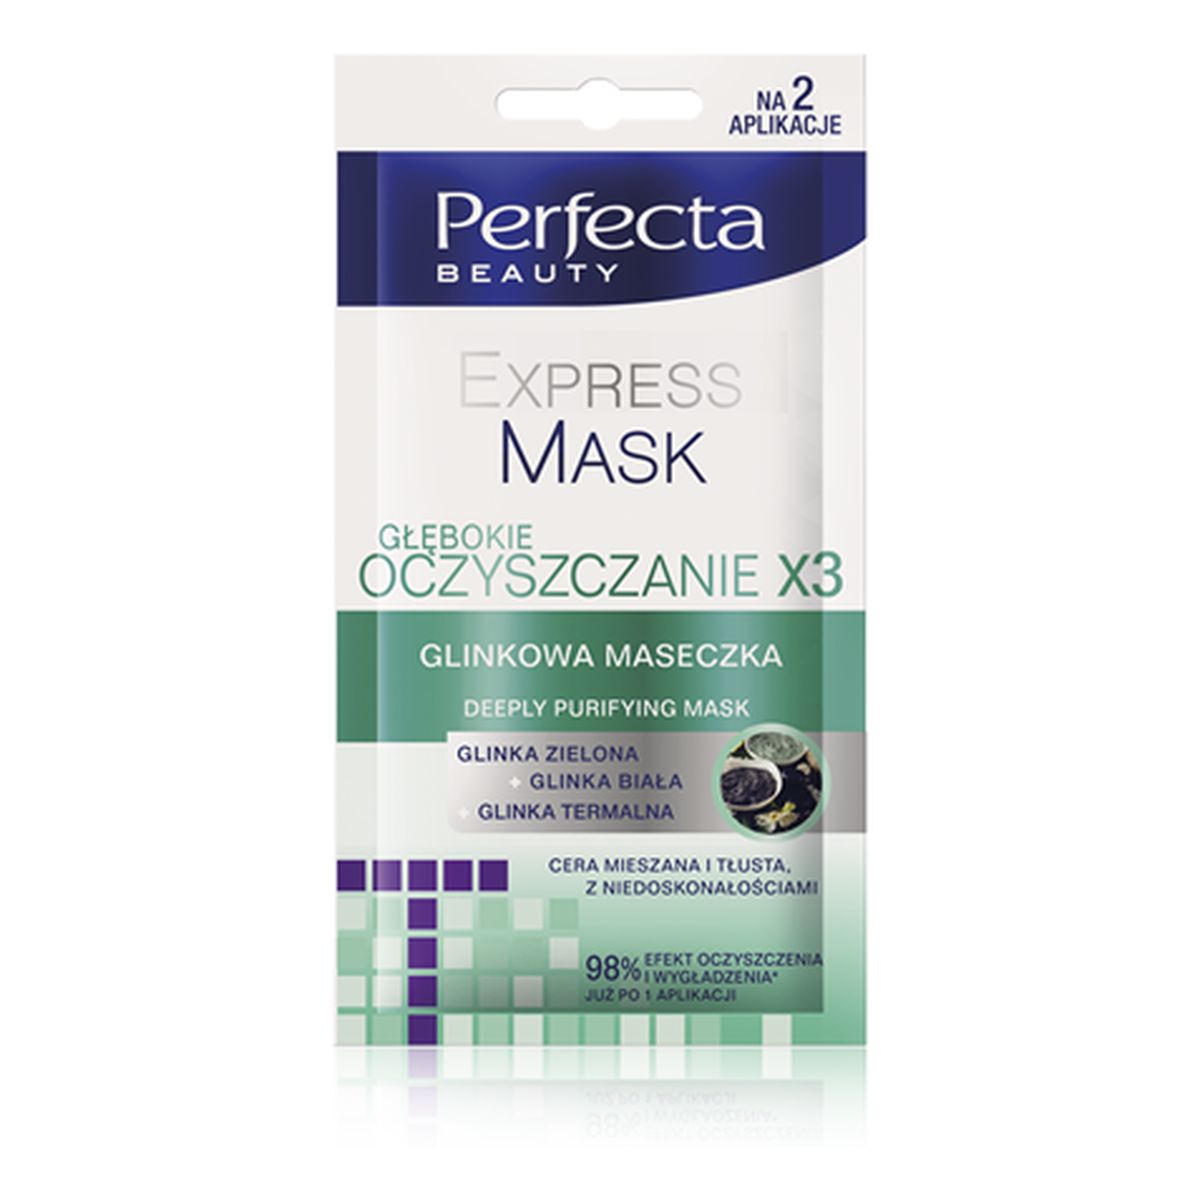 Perfecta Beauty Express Mask Glinkowa Maseczka Głębokie Oczyszczenie x3